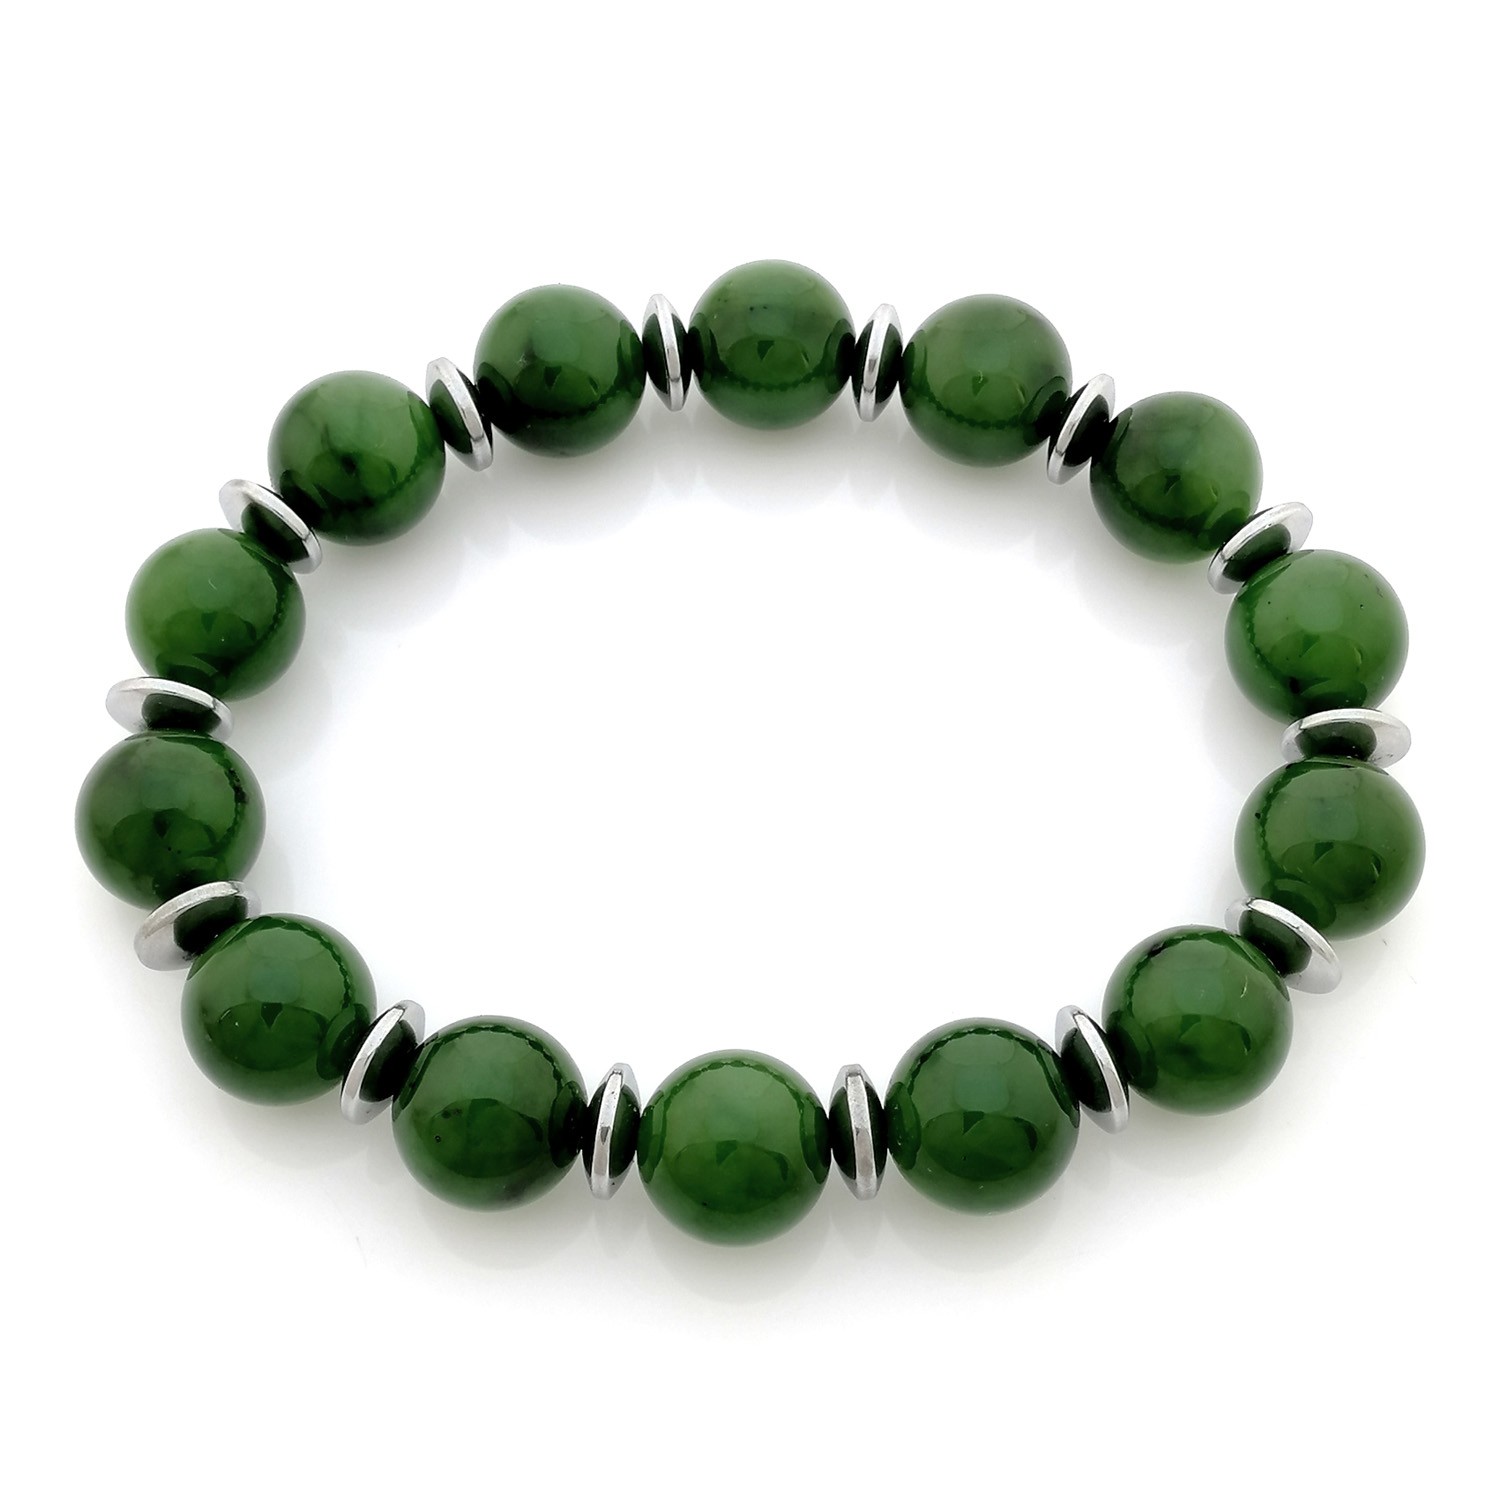 100% Natural Hetian Green Jade Nephrite Bracelet